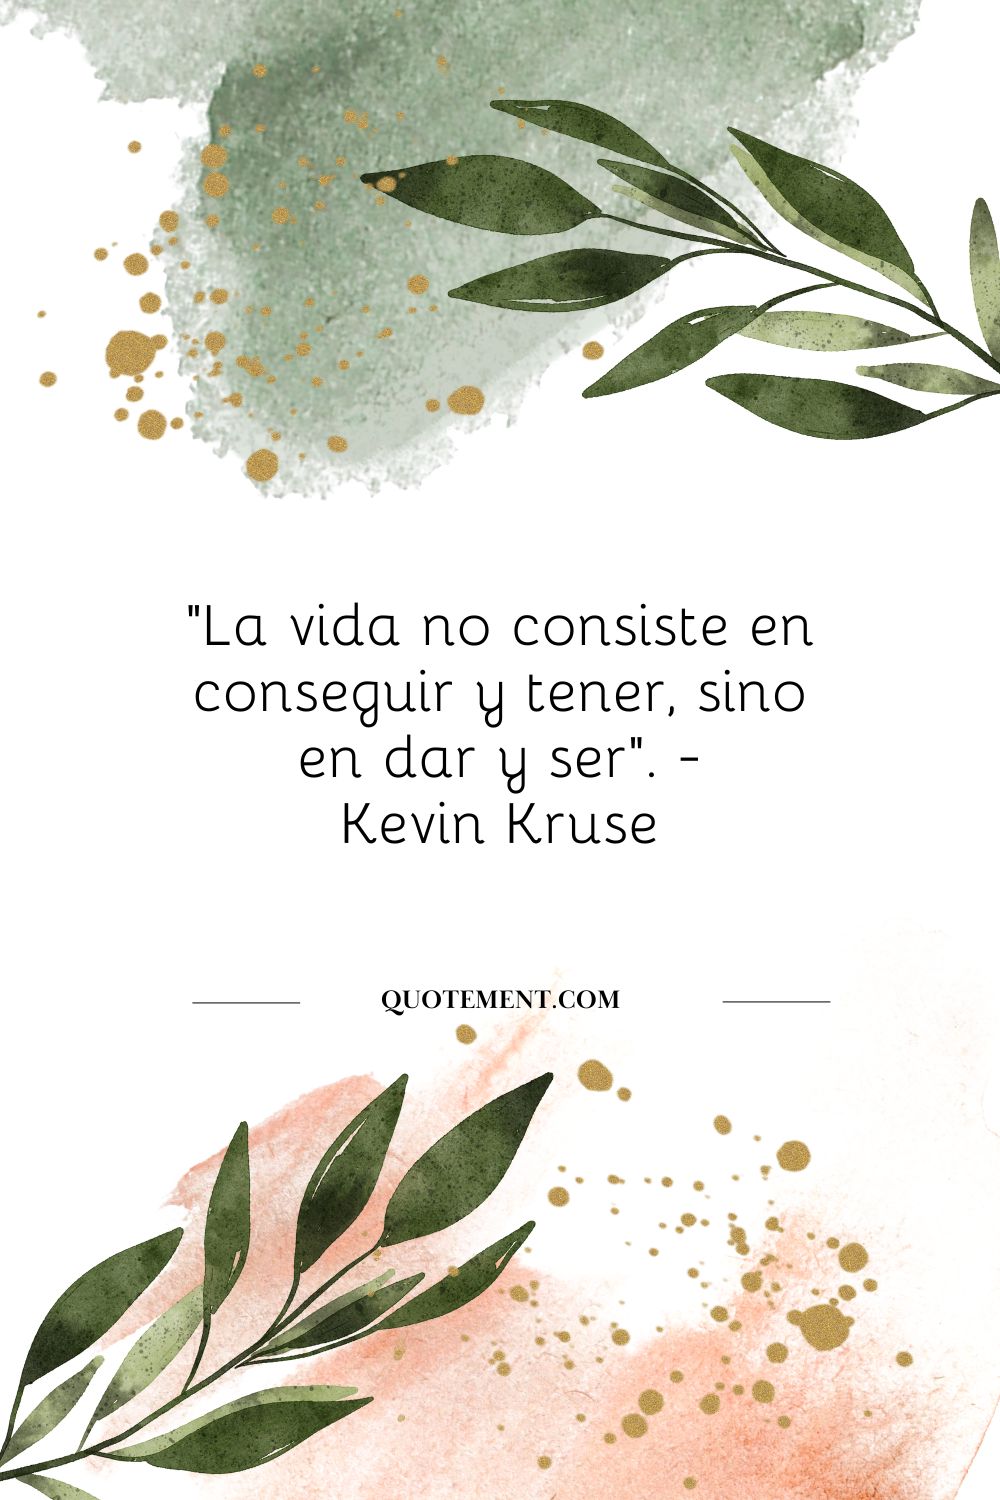 "La vida no consiste en conseguir y tener, sino en dar y ser". - Kevin Kruse